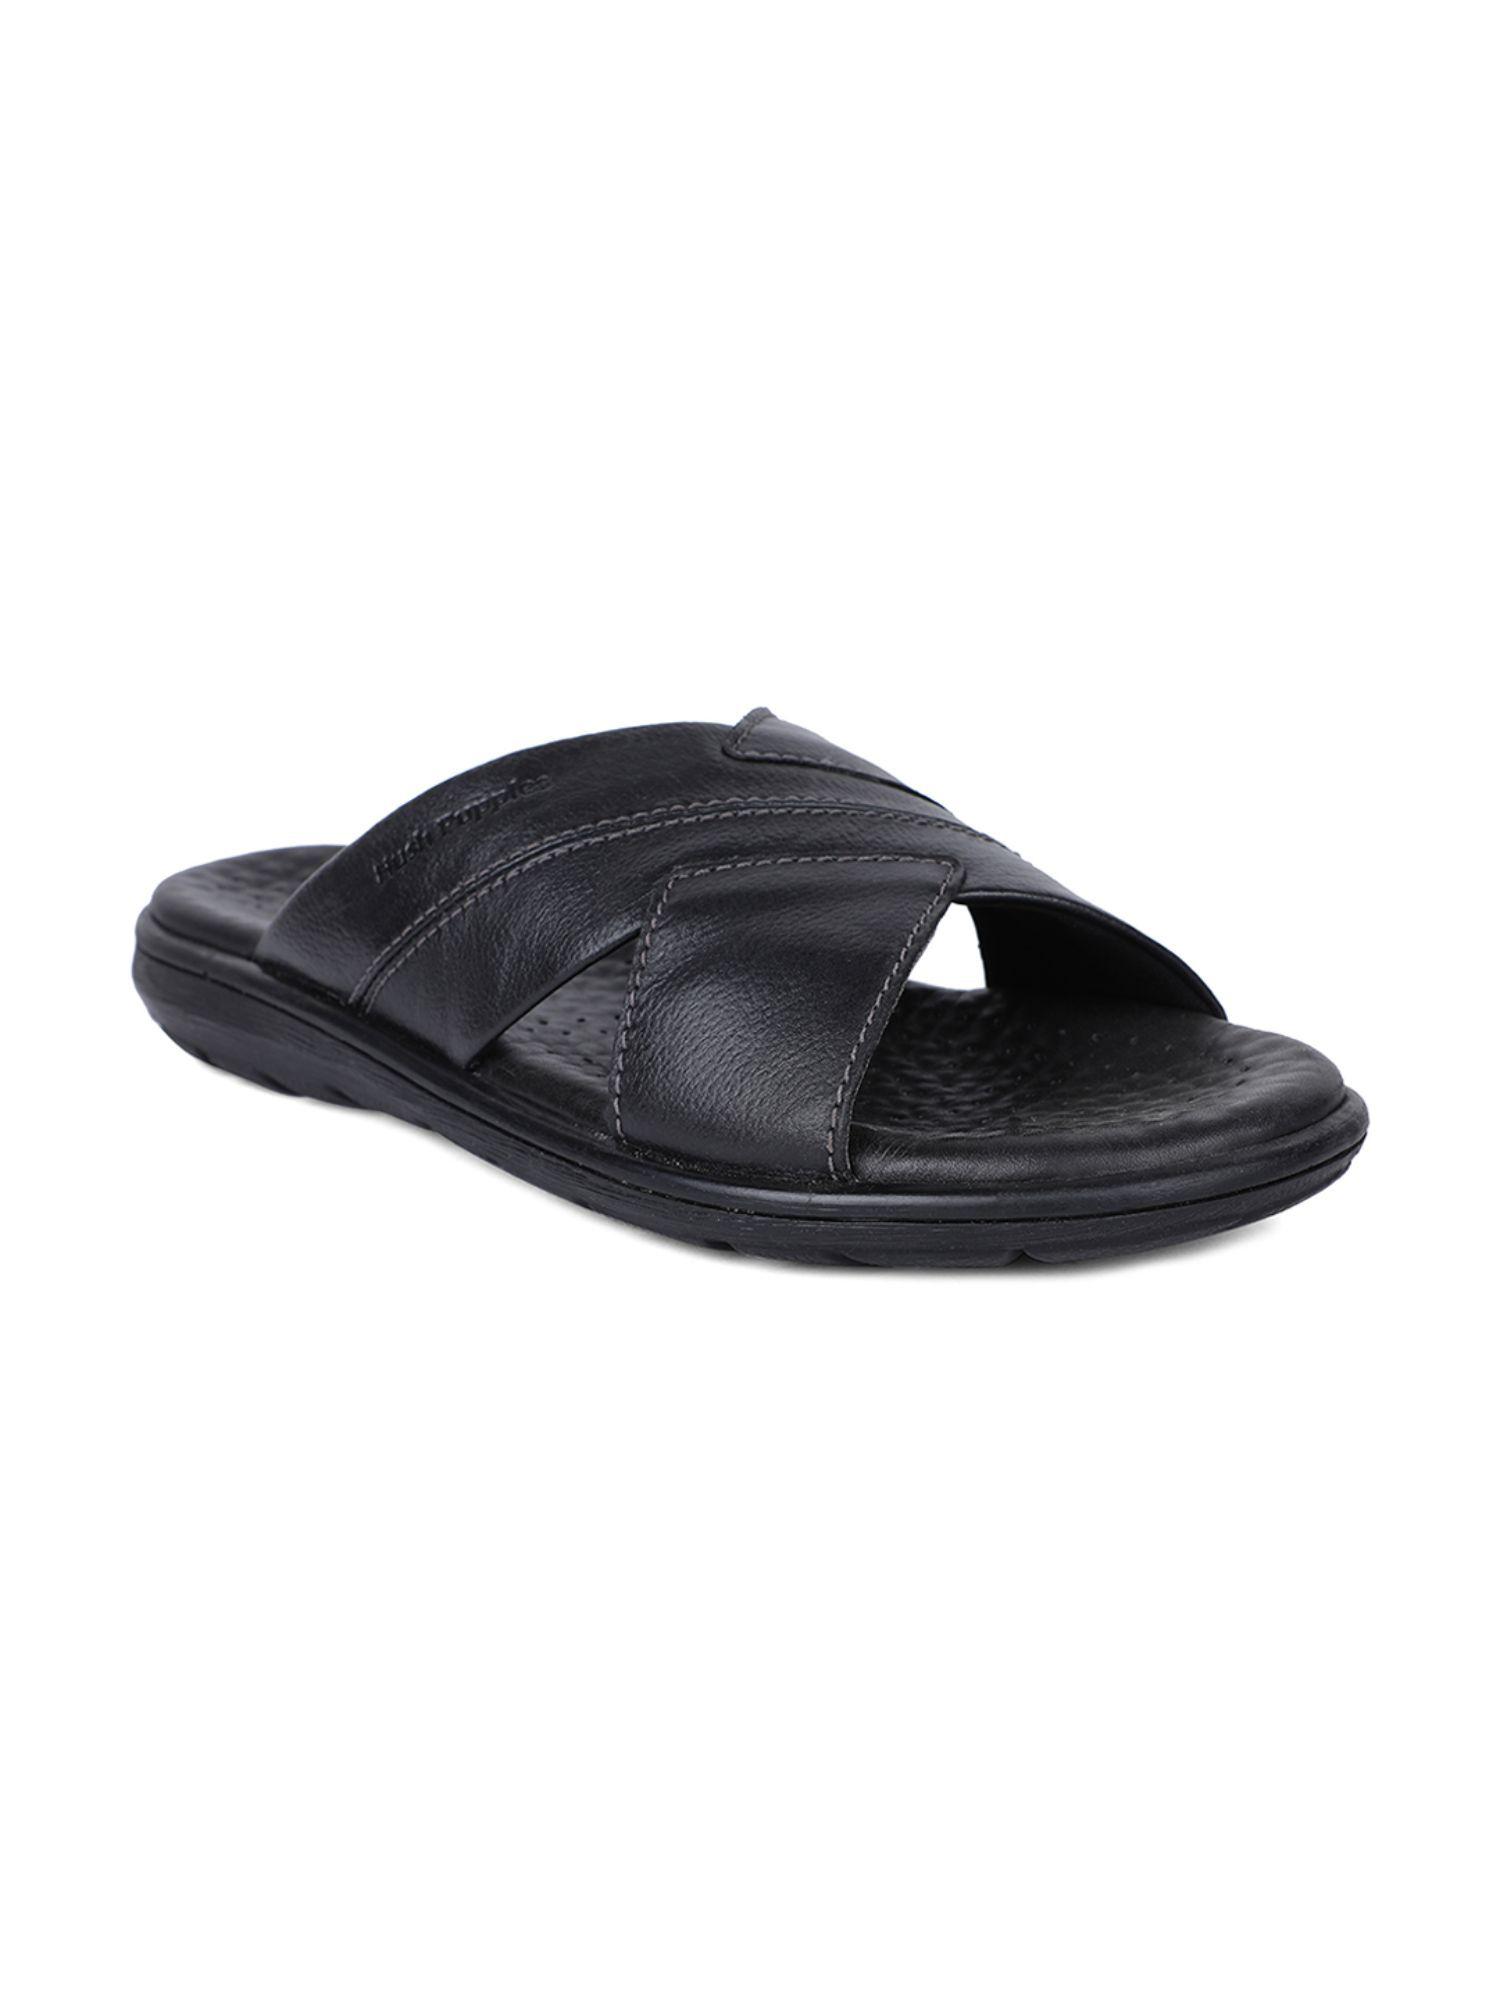 solid-black-sandals